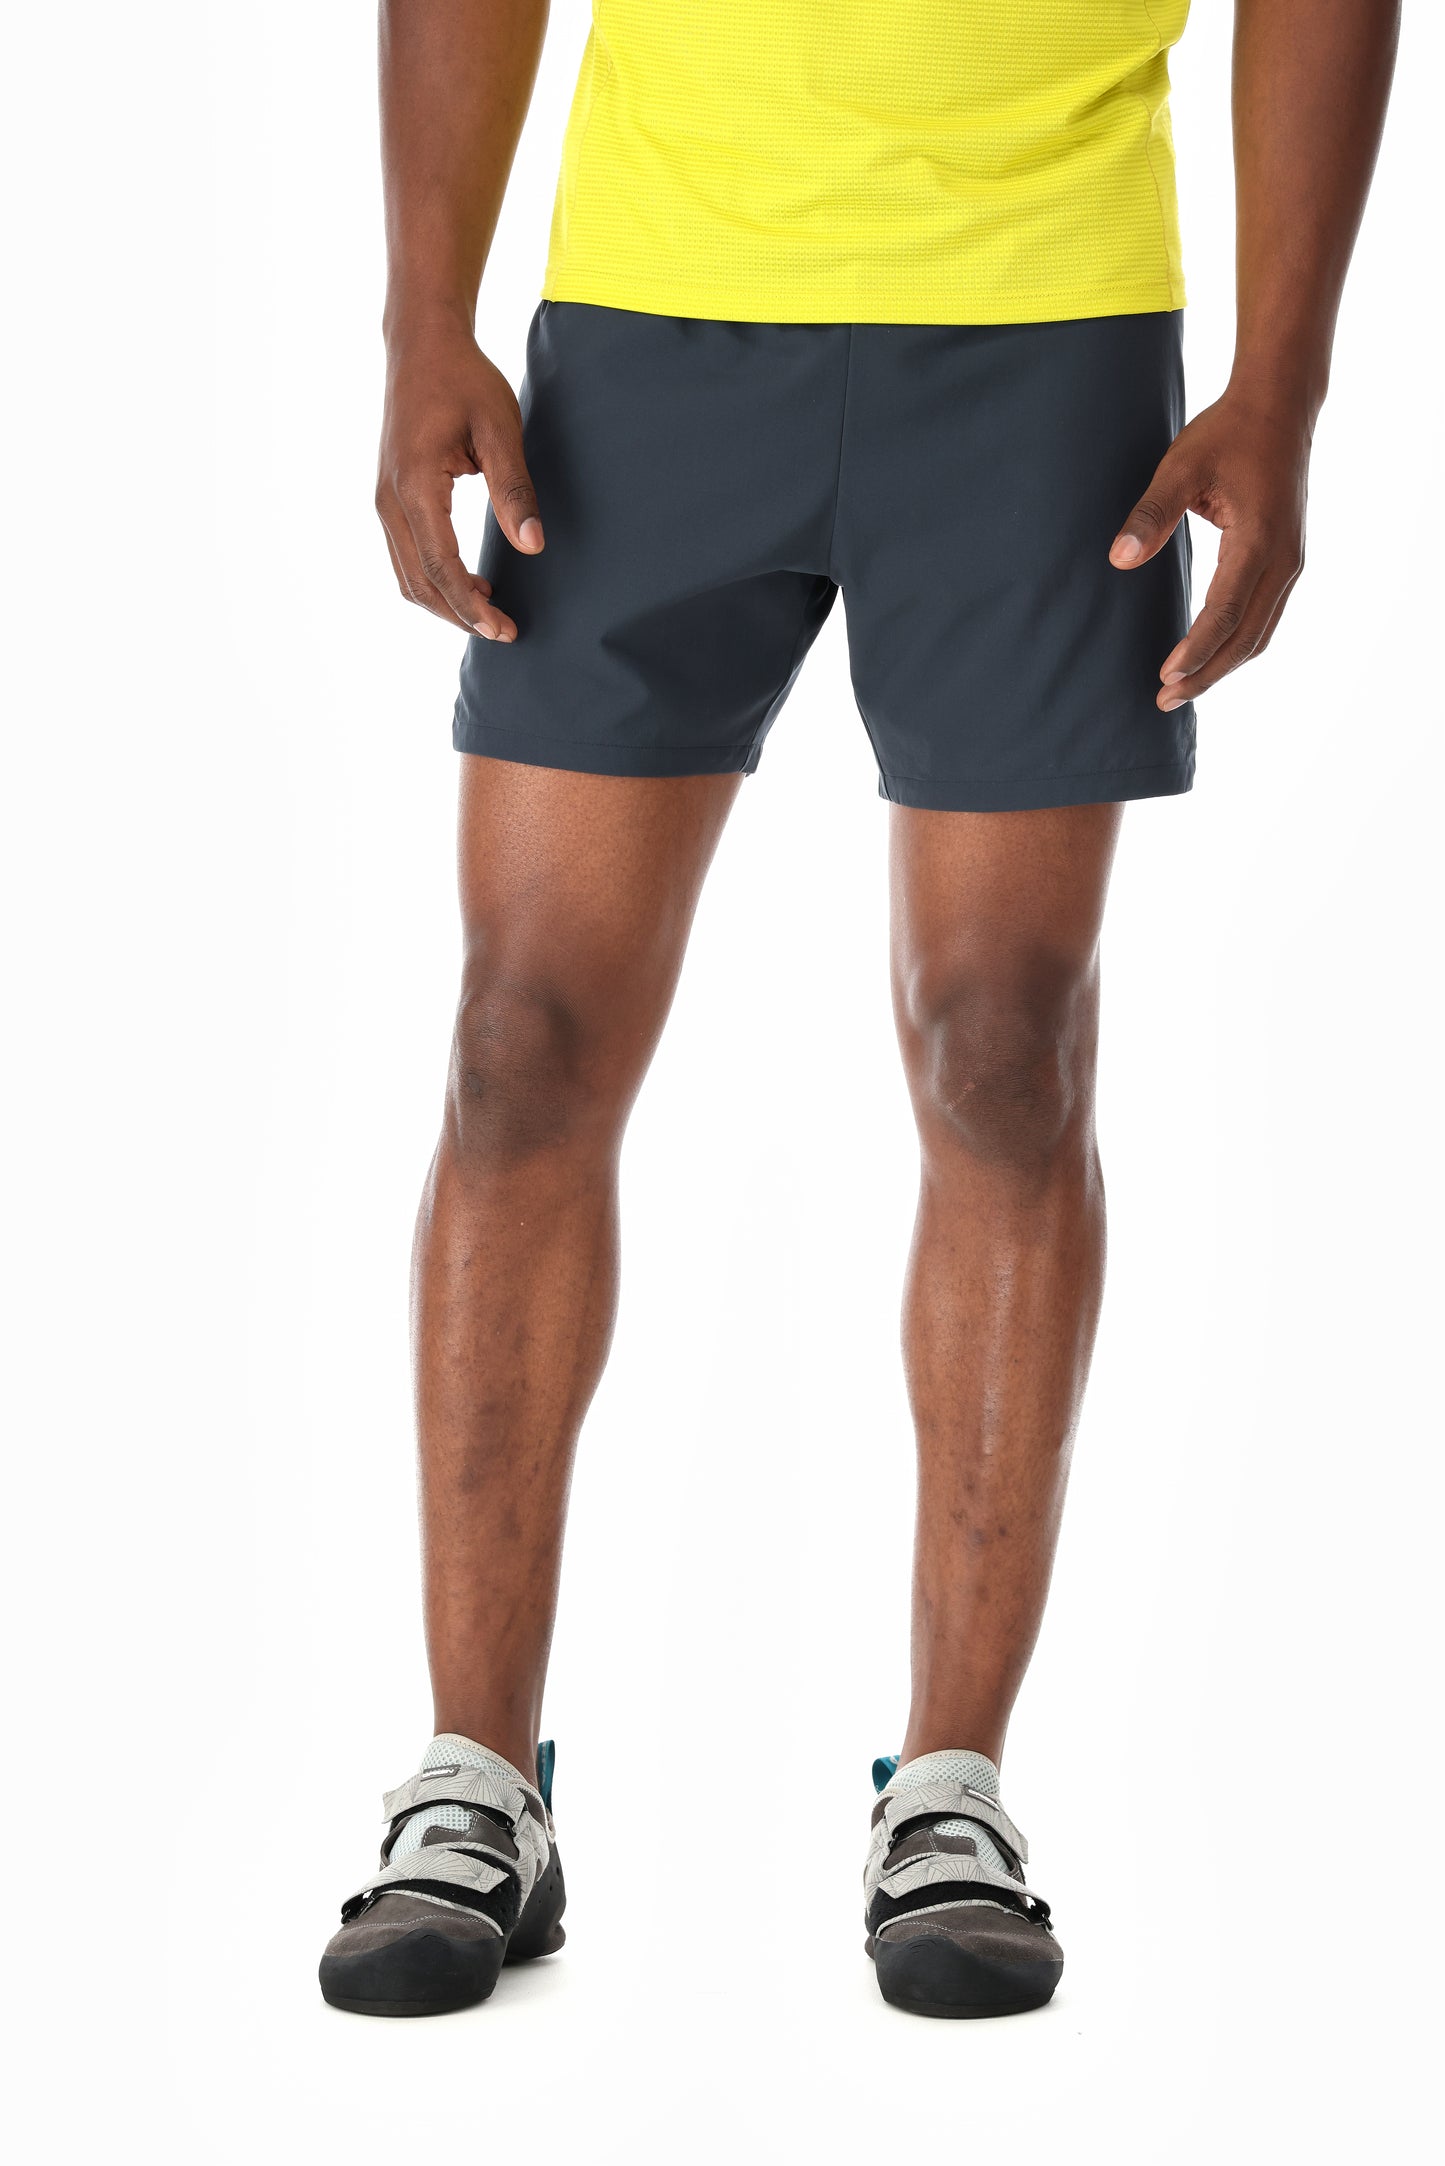 Rab / Talus Active Shorts